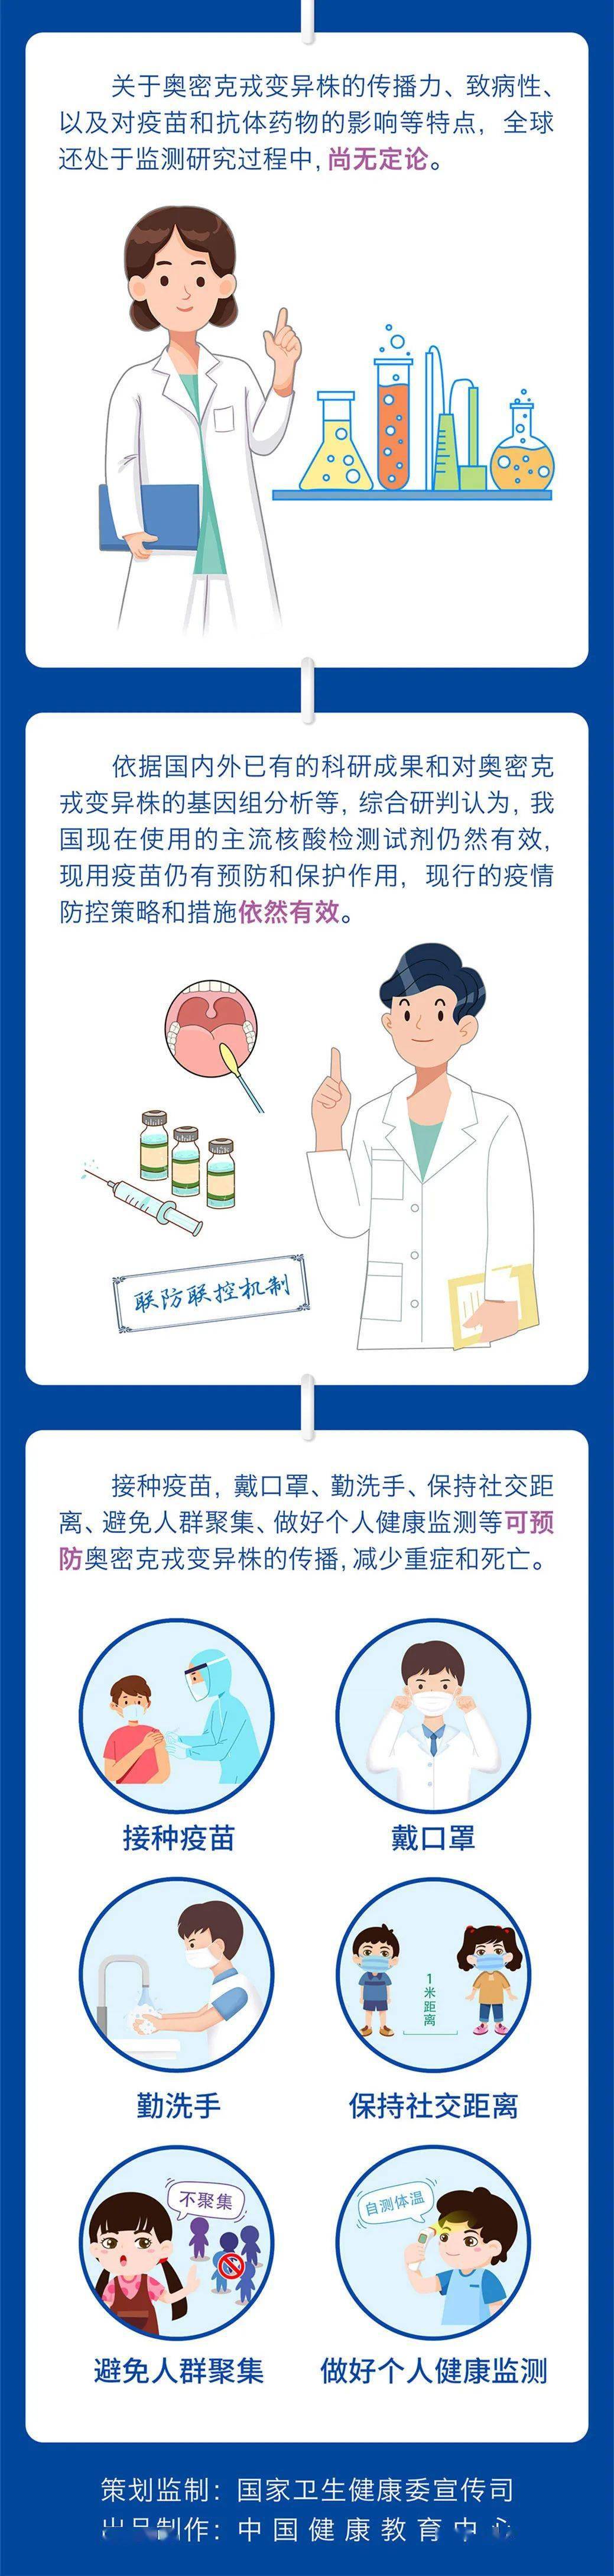 防控|蒲江县新冠肺炎疫情最新动态（12月26日）|?一图了解“奥密克戎”的奥秘